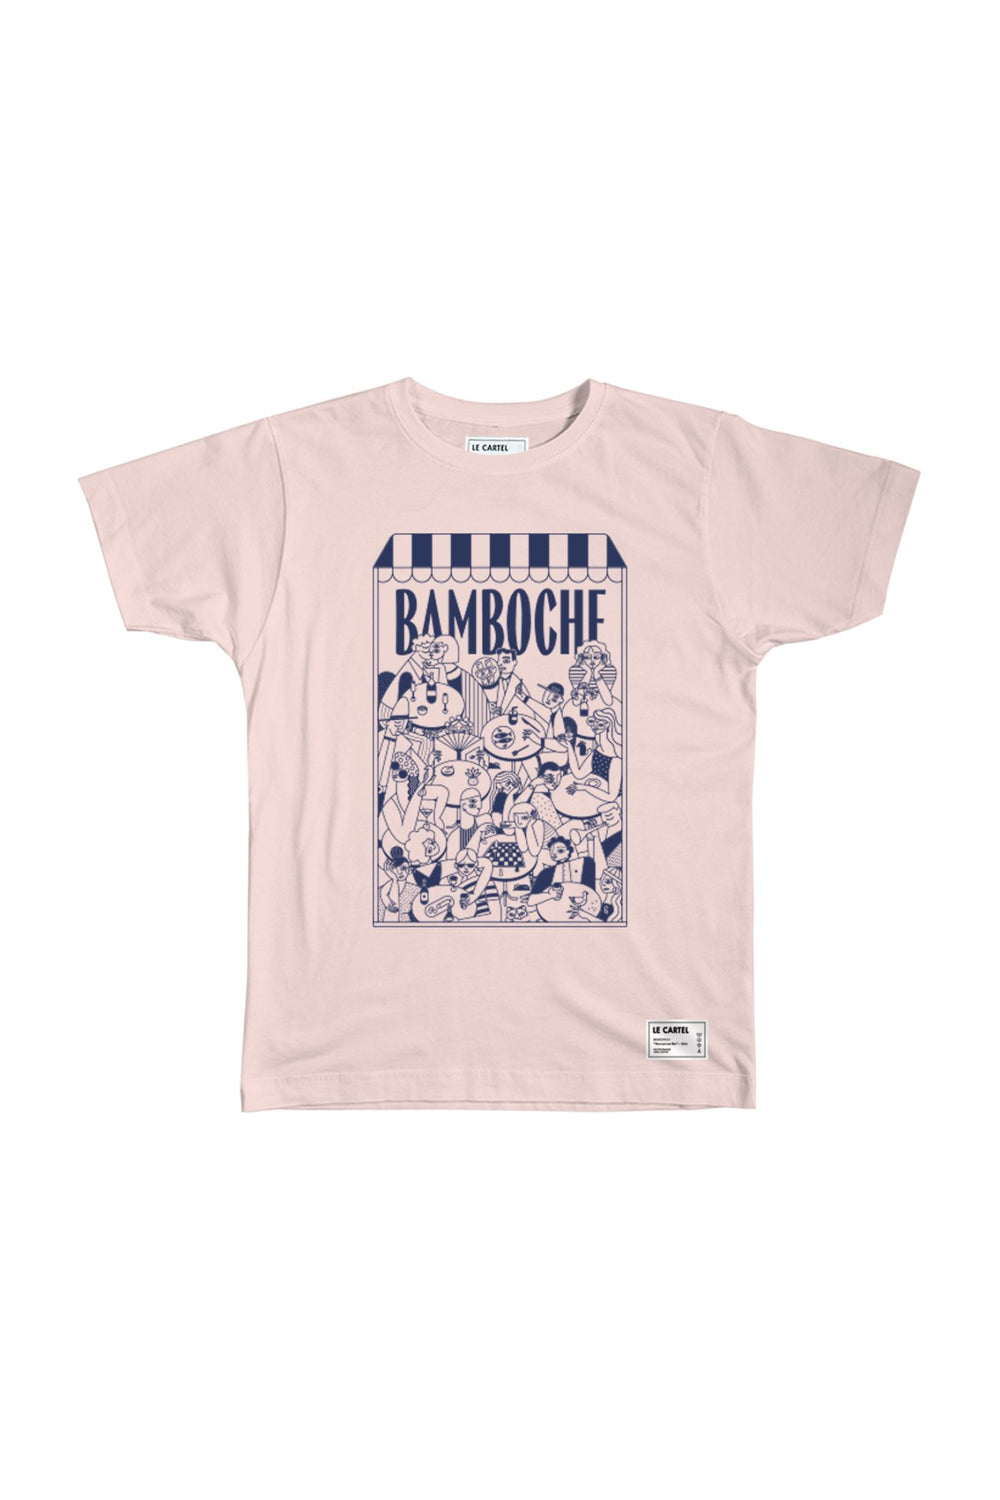 BAMBOCHE・T-shirt unisexe・Rose poudré - Le Cartel